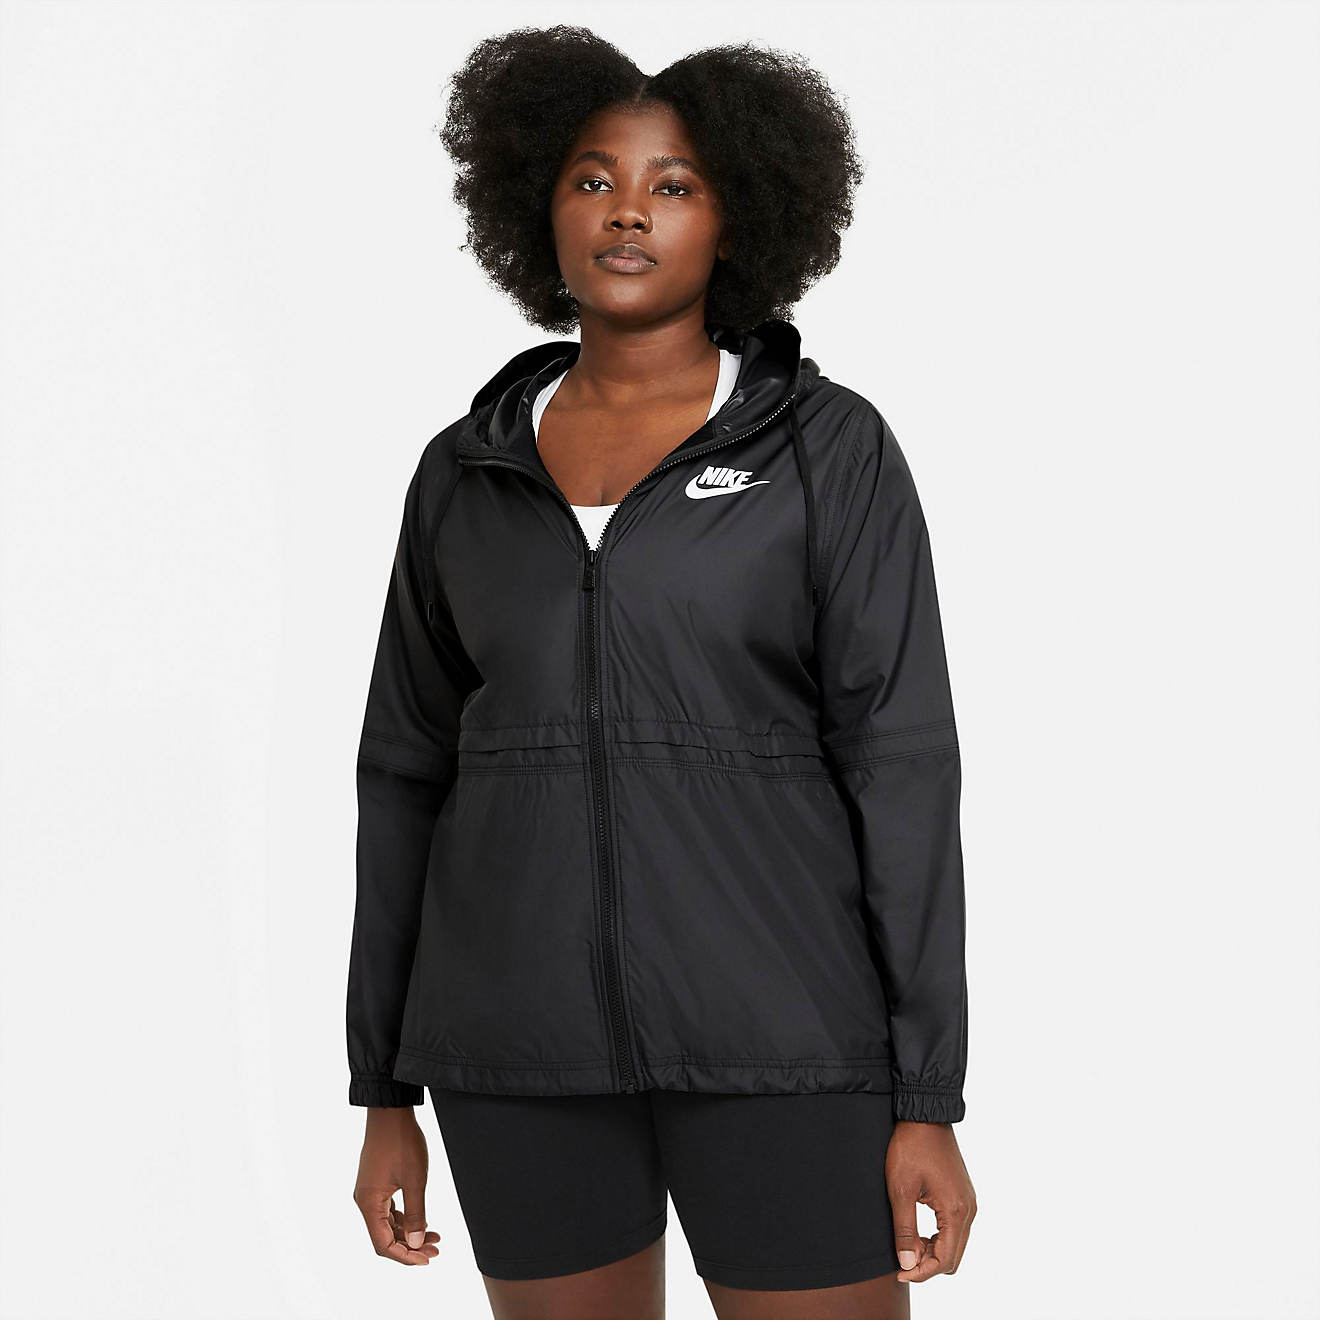 Nike Women's Sportswear Woven Plus Size Jacket | Academy